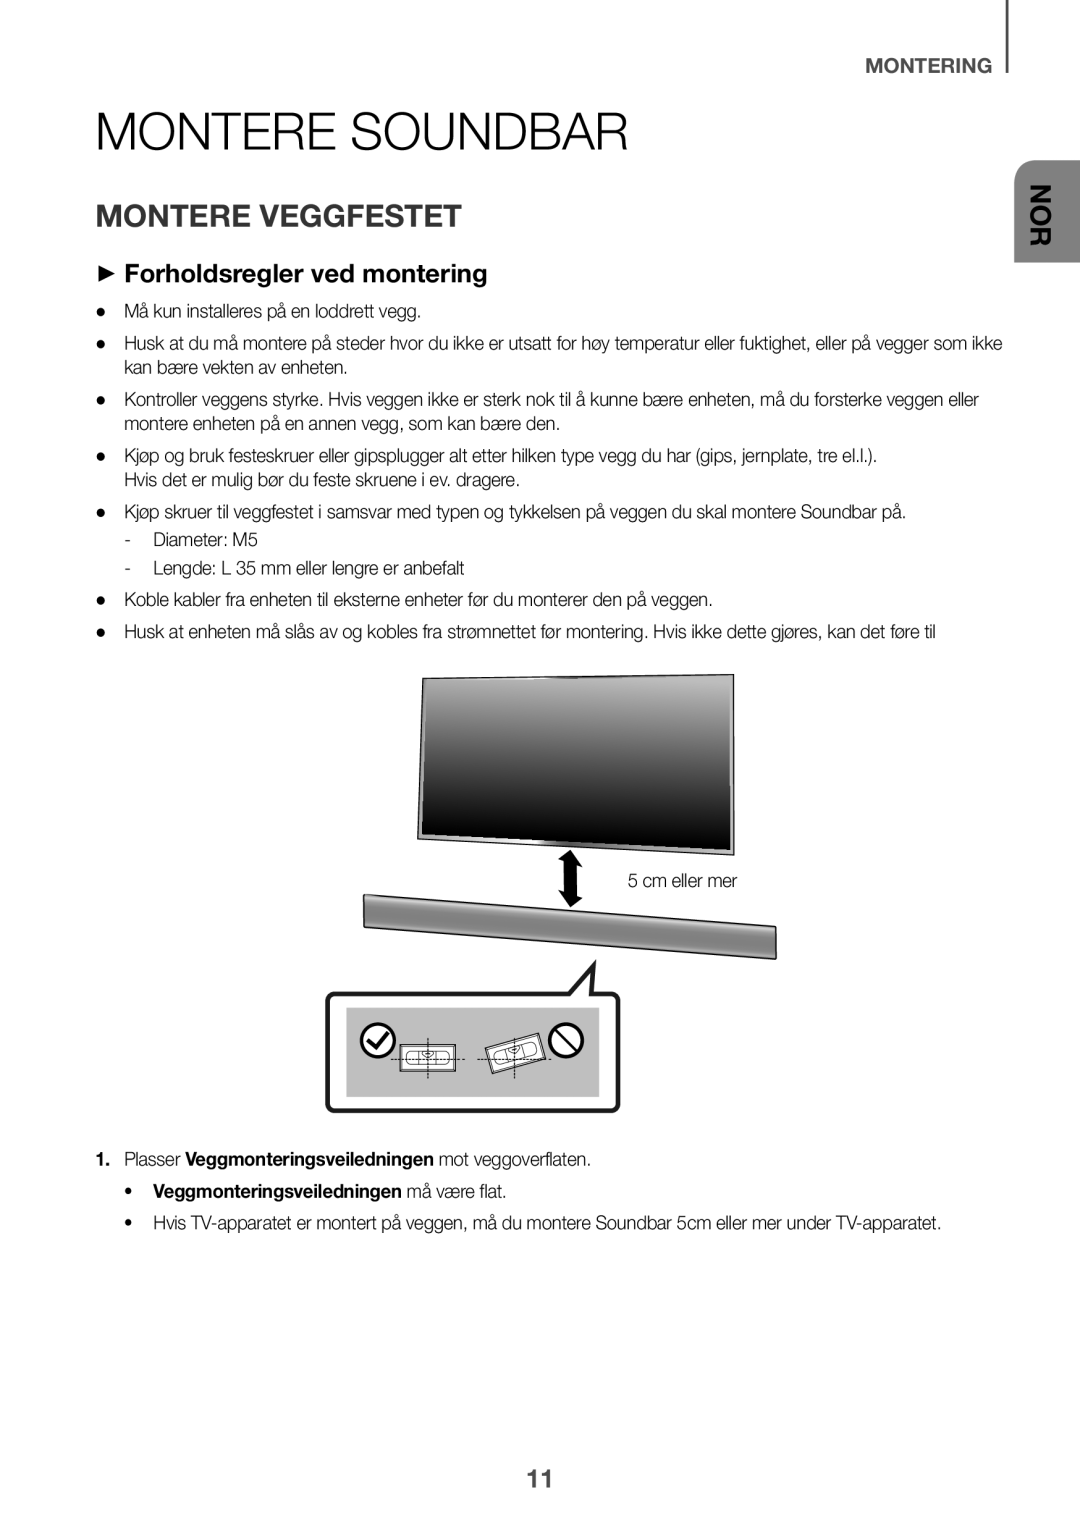 Samsung HW-K660/XE, HW-K651/EN, HW-K650/EN Montere Soundbar, Montere veggfestet, ++Forholdsregler ved montering, Montering 